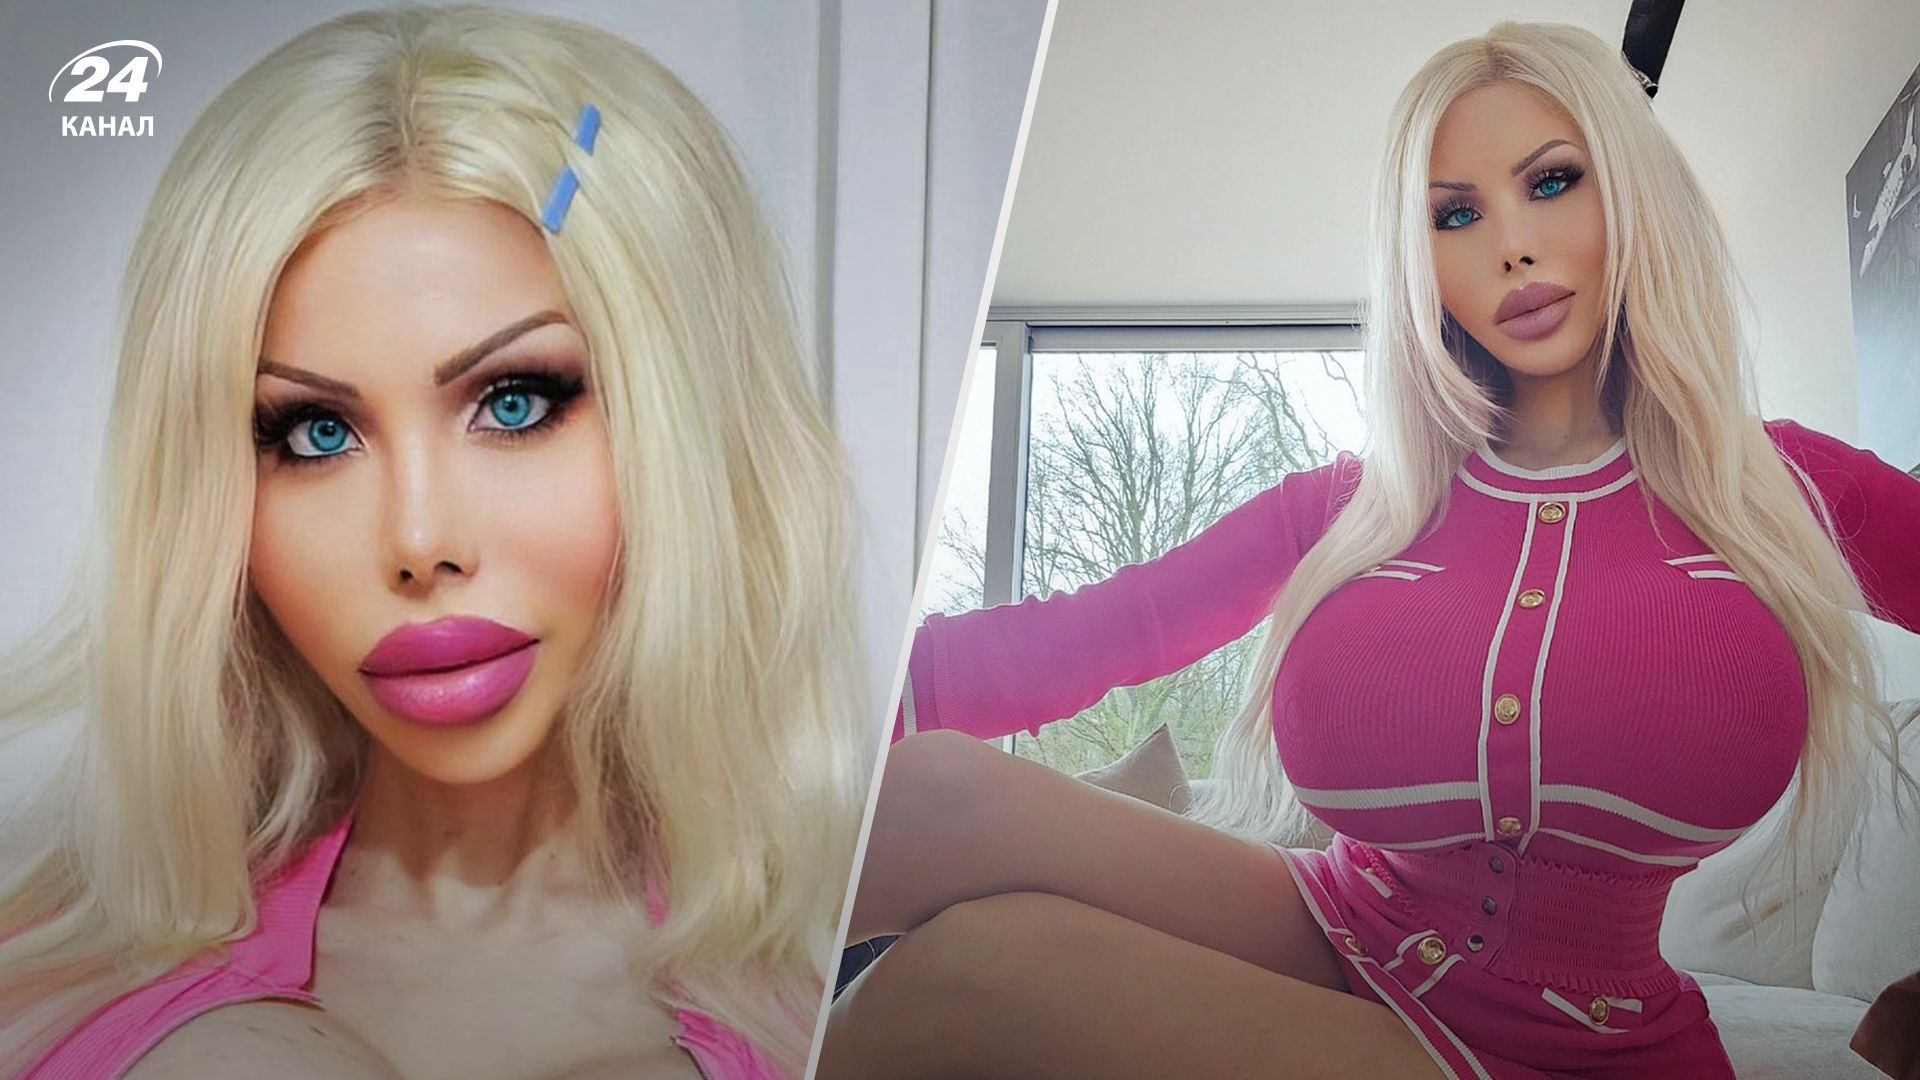 28-летняя девушка сделала десятки операций, чтобы быть похожей на Барби